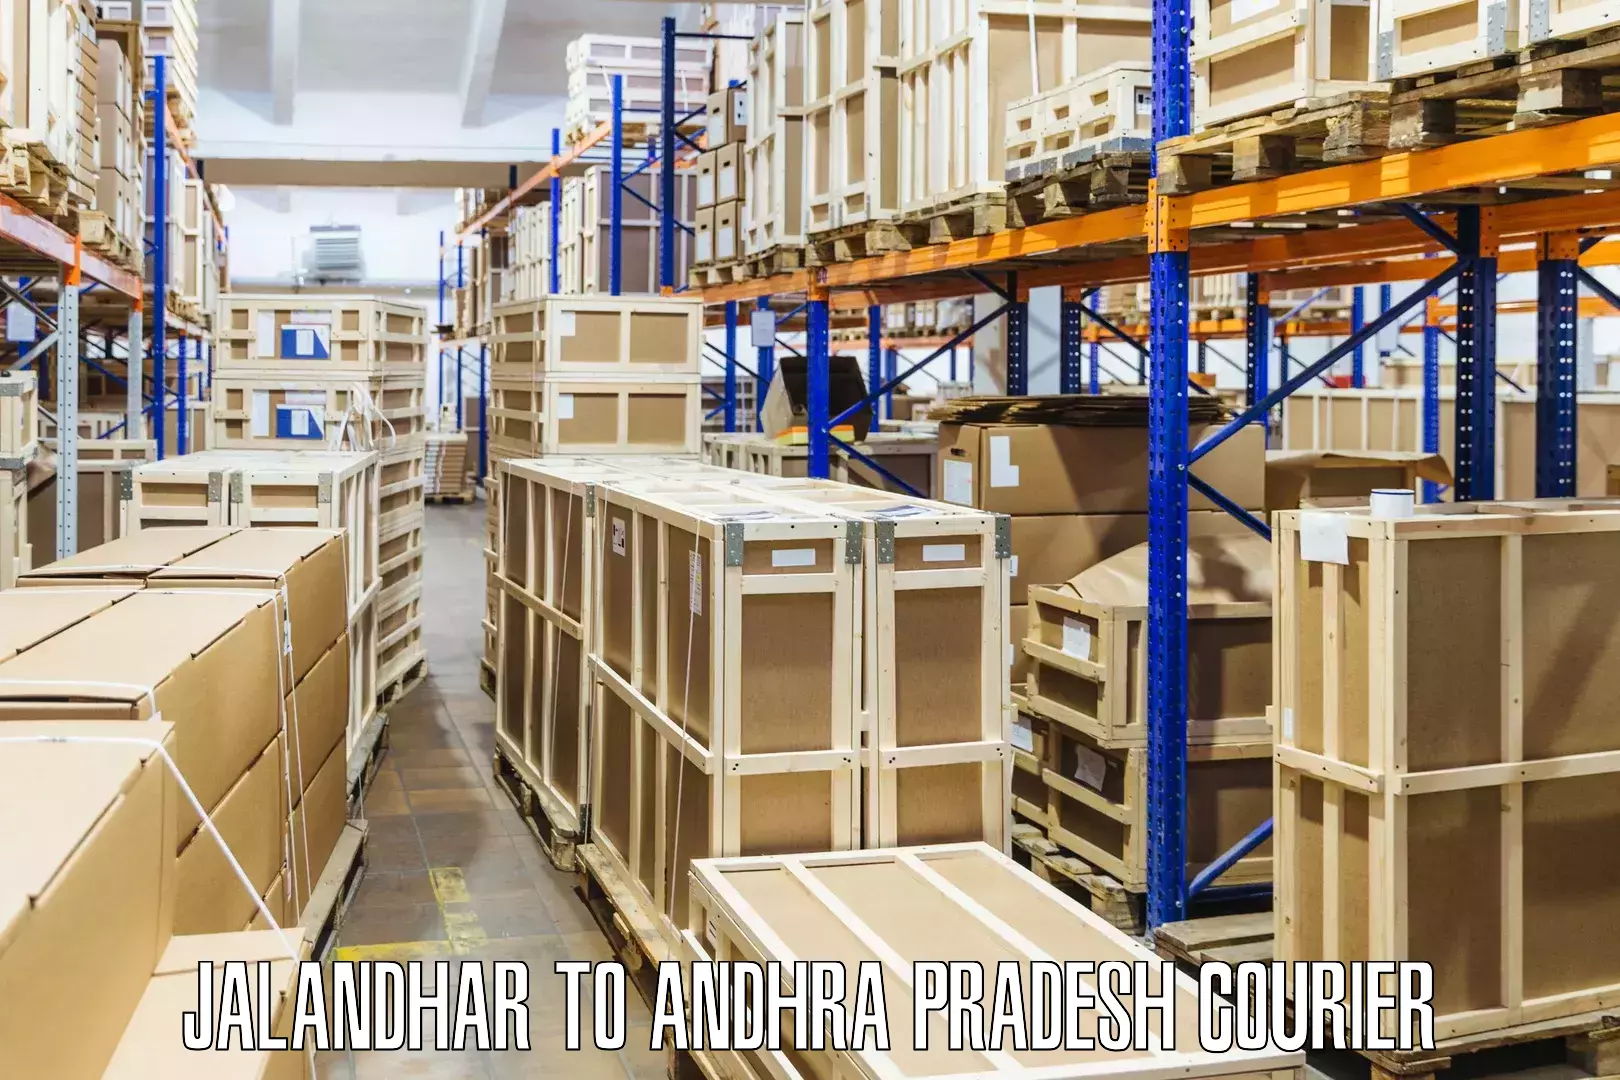 24-hour courier service Jalandhar to Andhra Pradesh